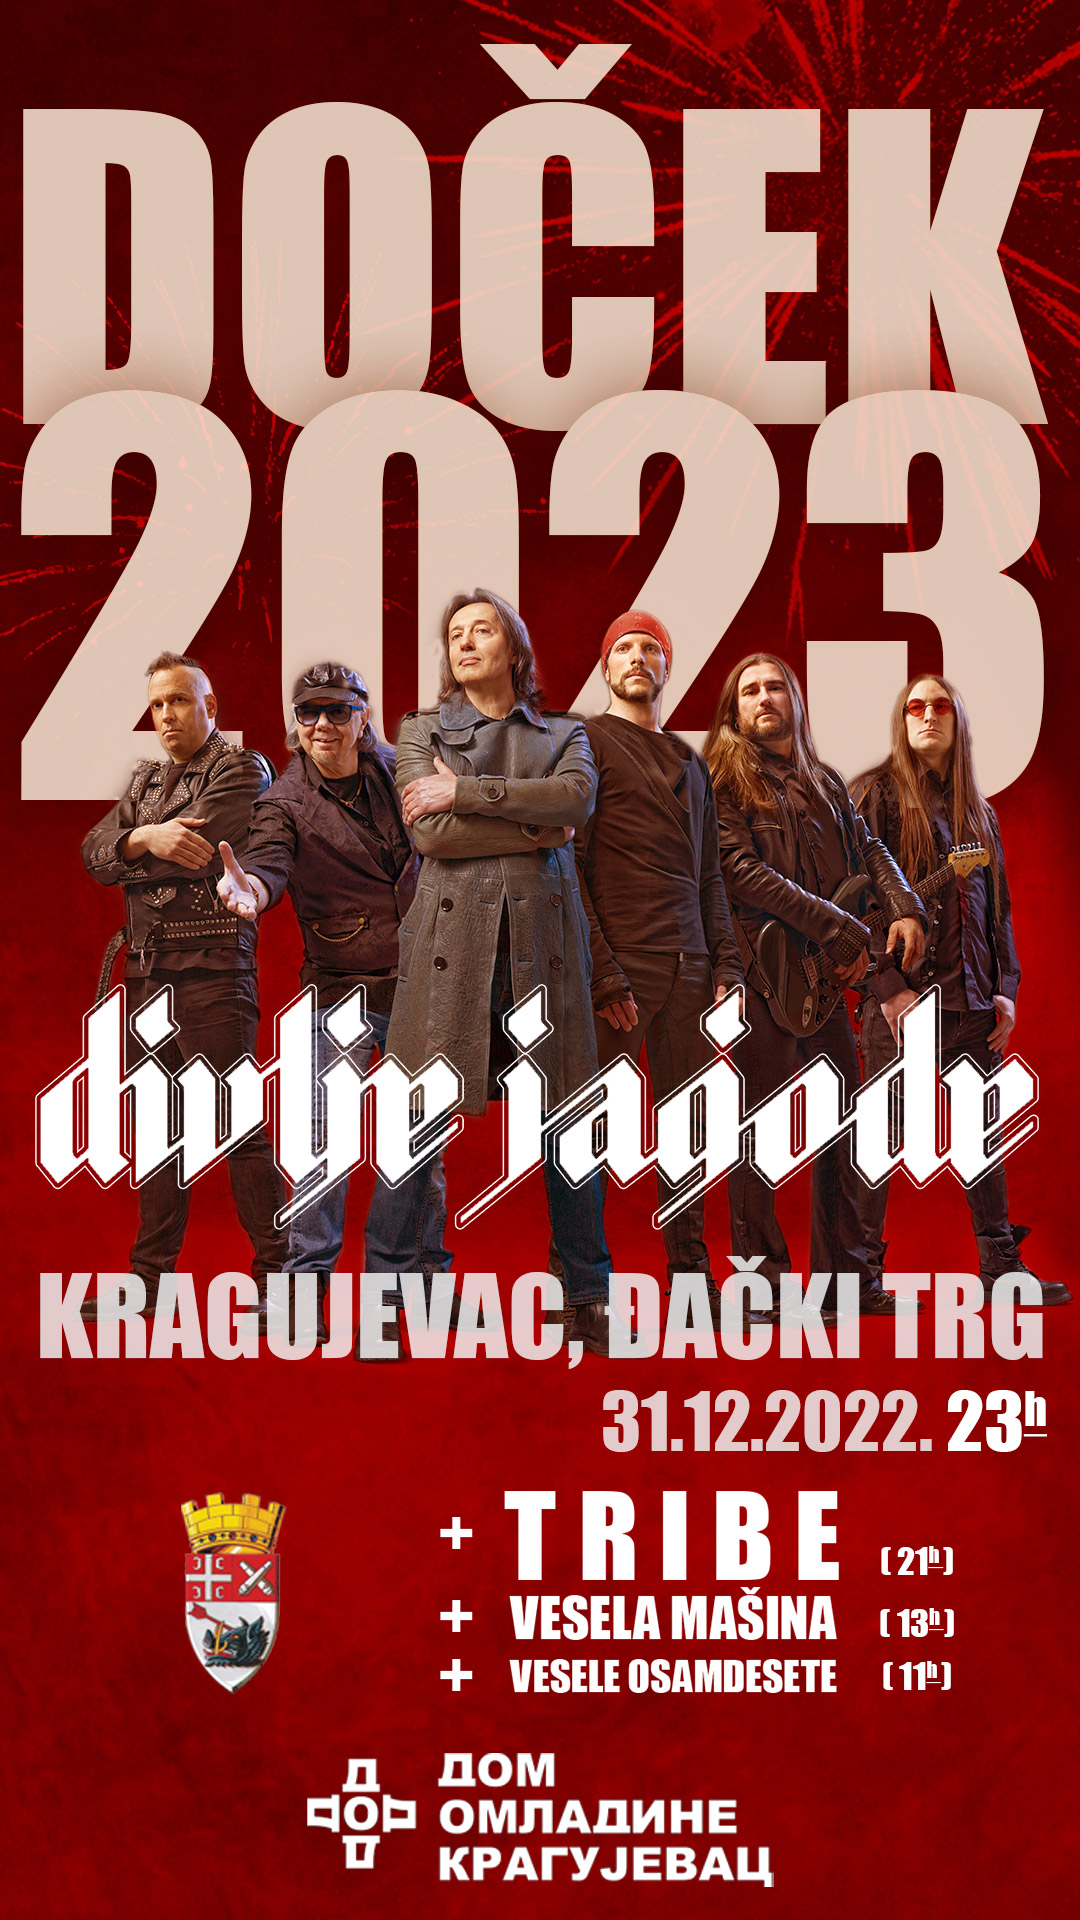 Divlje-Jagode-docek2023-KG—IG-Story-1